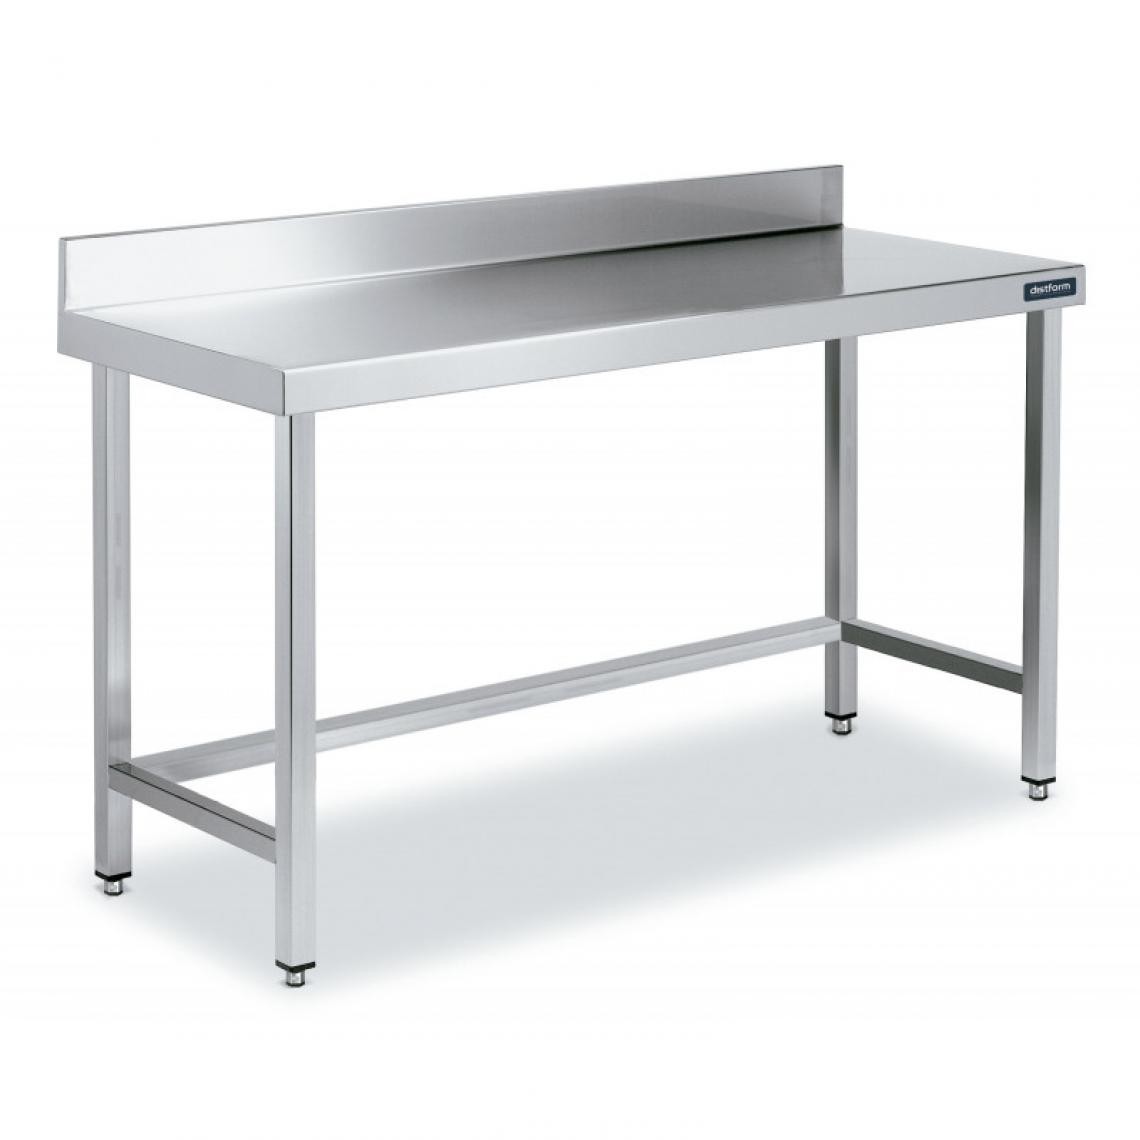 DISTFORM - Table Adossée en Inox avec Renforts Profondeur 700 mm - Distform - Acier inoxydable1600x700 - Tables à manger